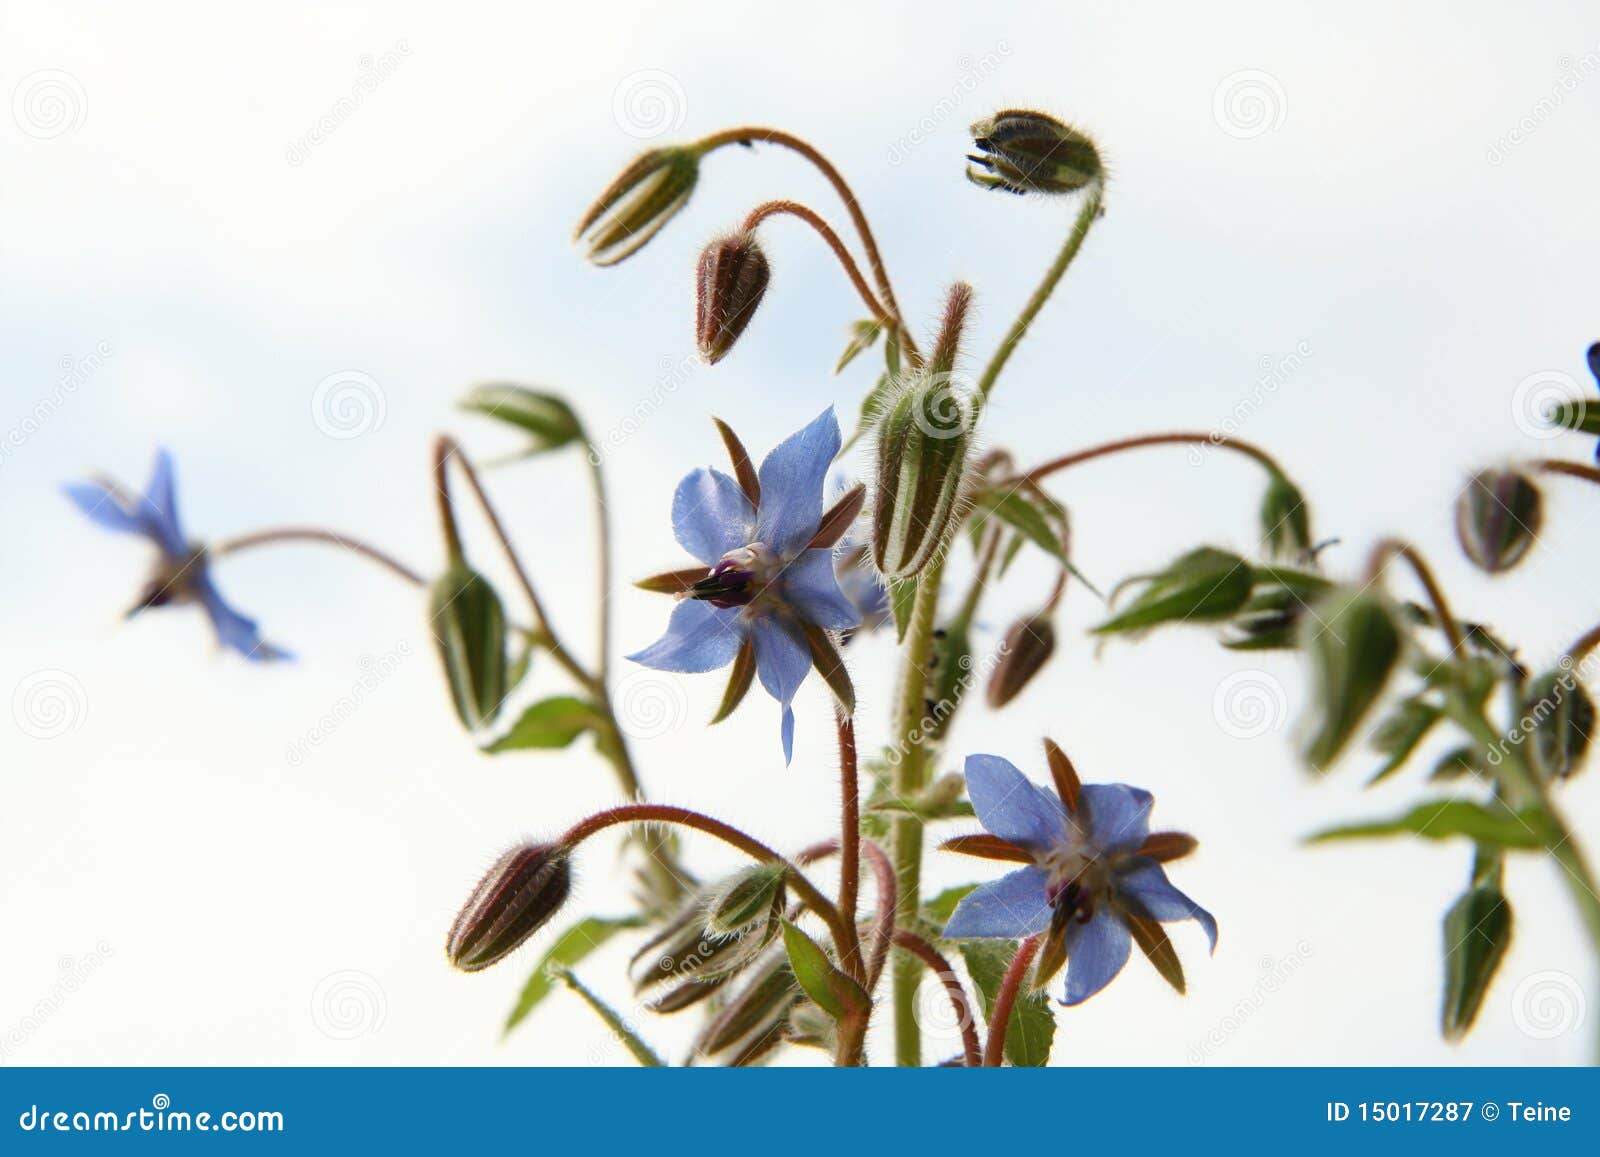 borage flowers (starflower)